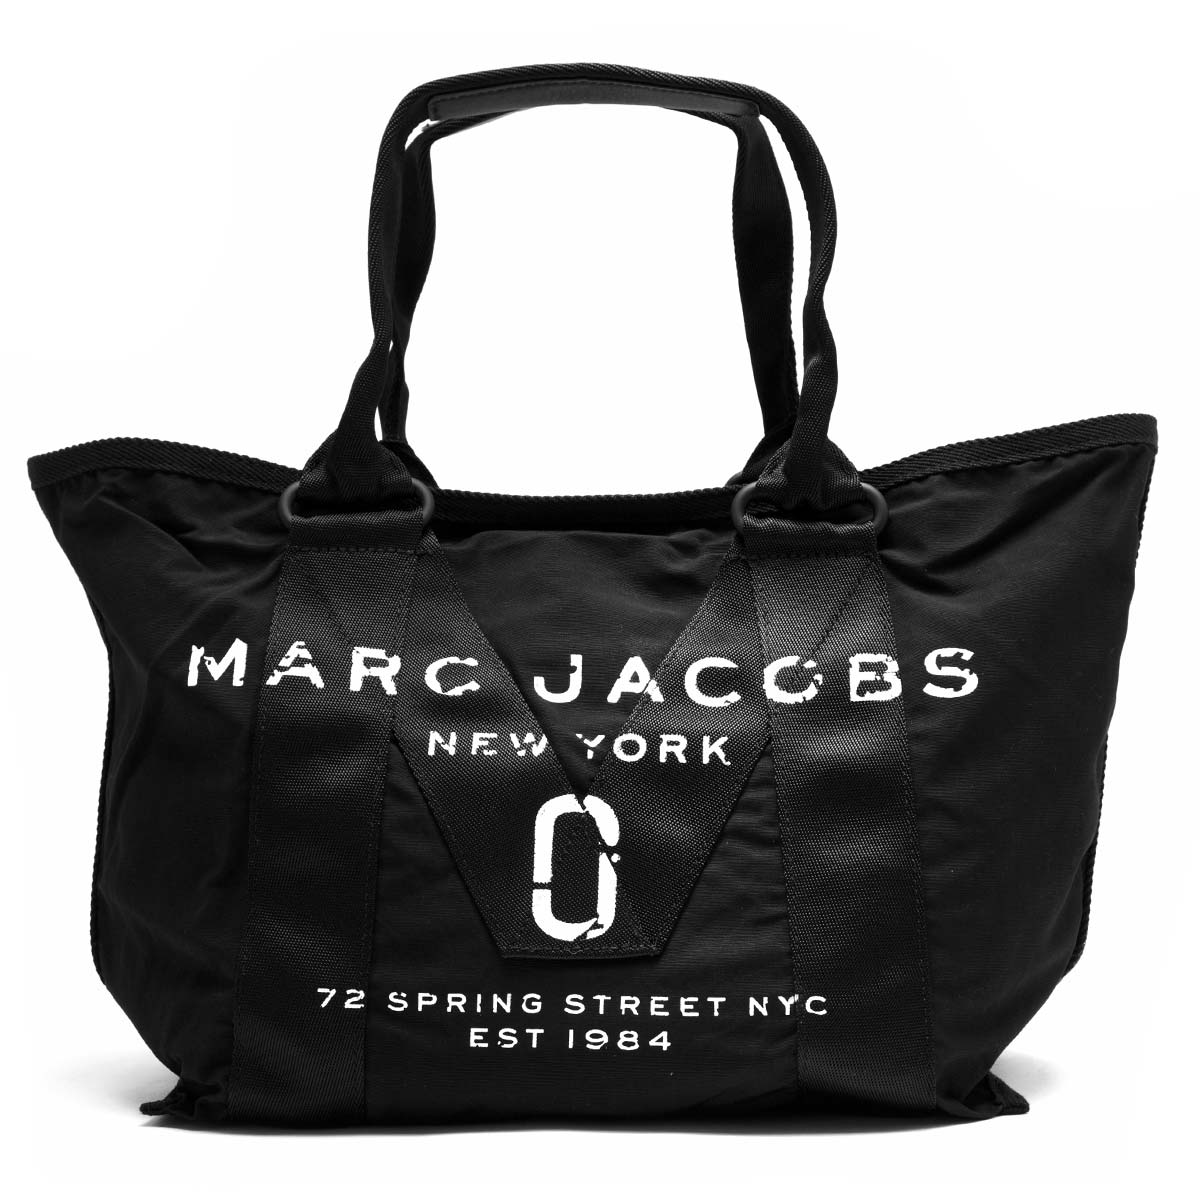 マークジェイコブス トートバッグ バッグ レディース ニュー ロゴ スモール ブラック M 001 1sz Marc Jacobs ブランド腕時計通販なら ブルークウォッチカンパニー 心斎橋店